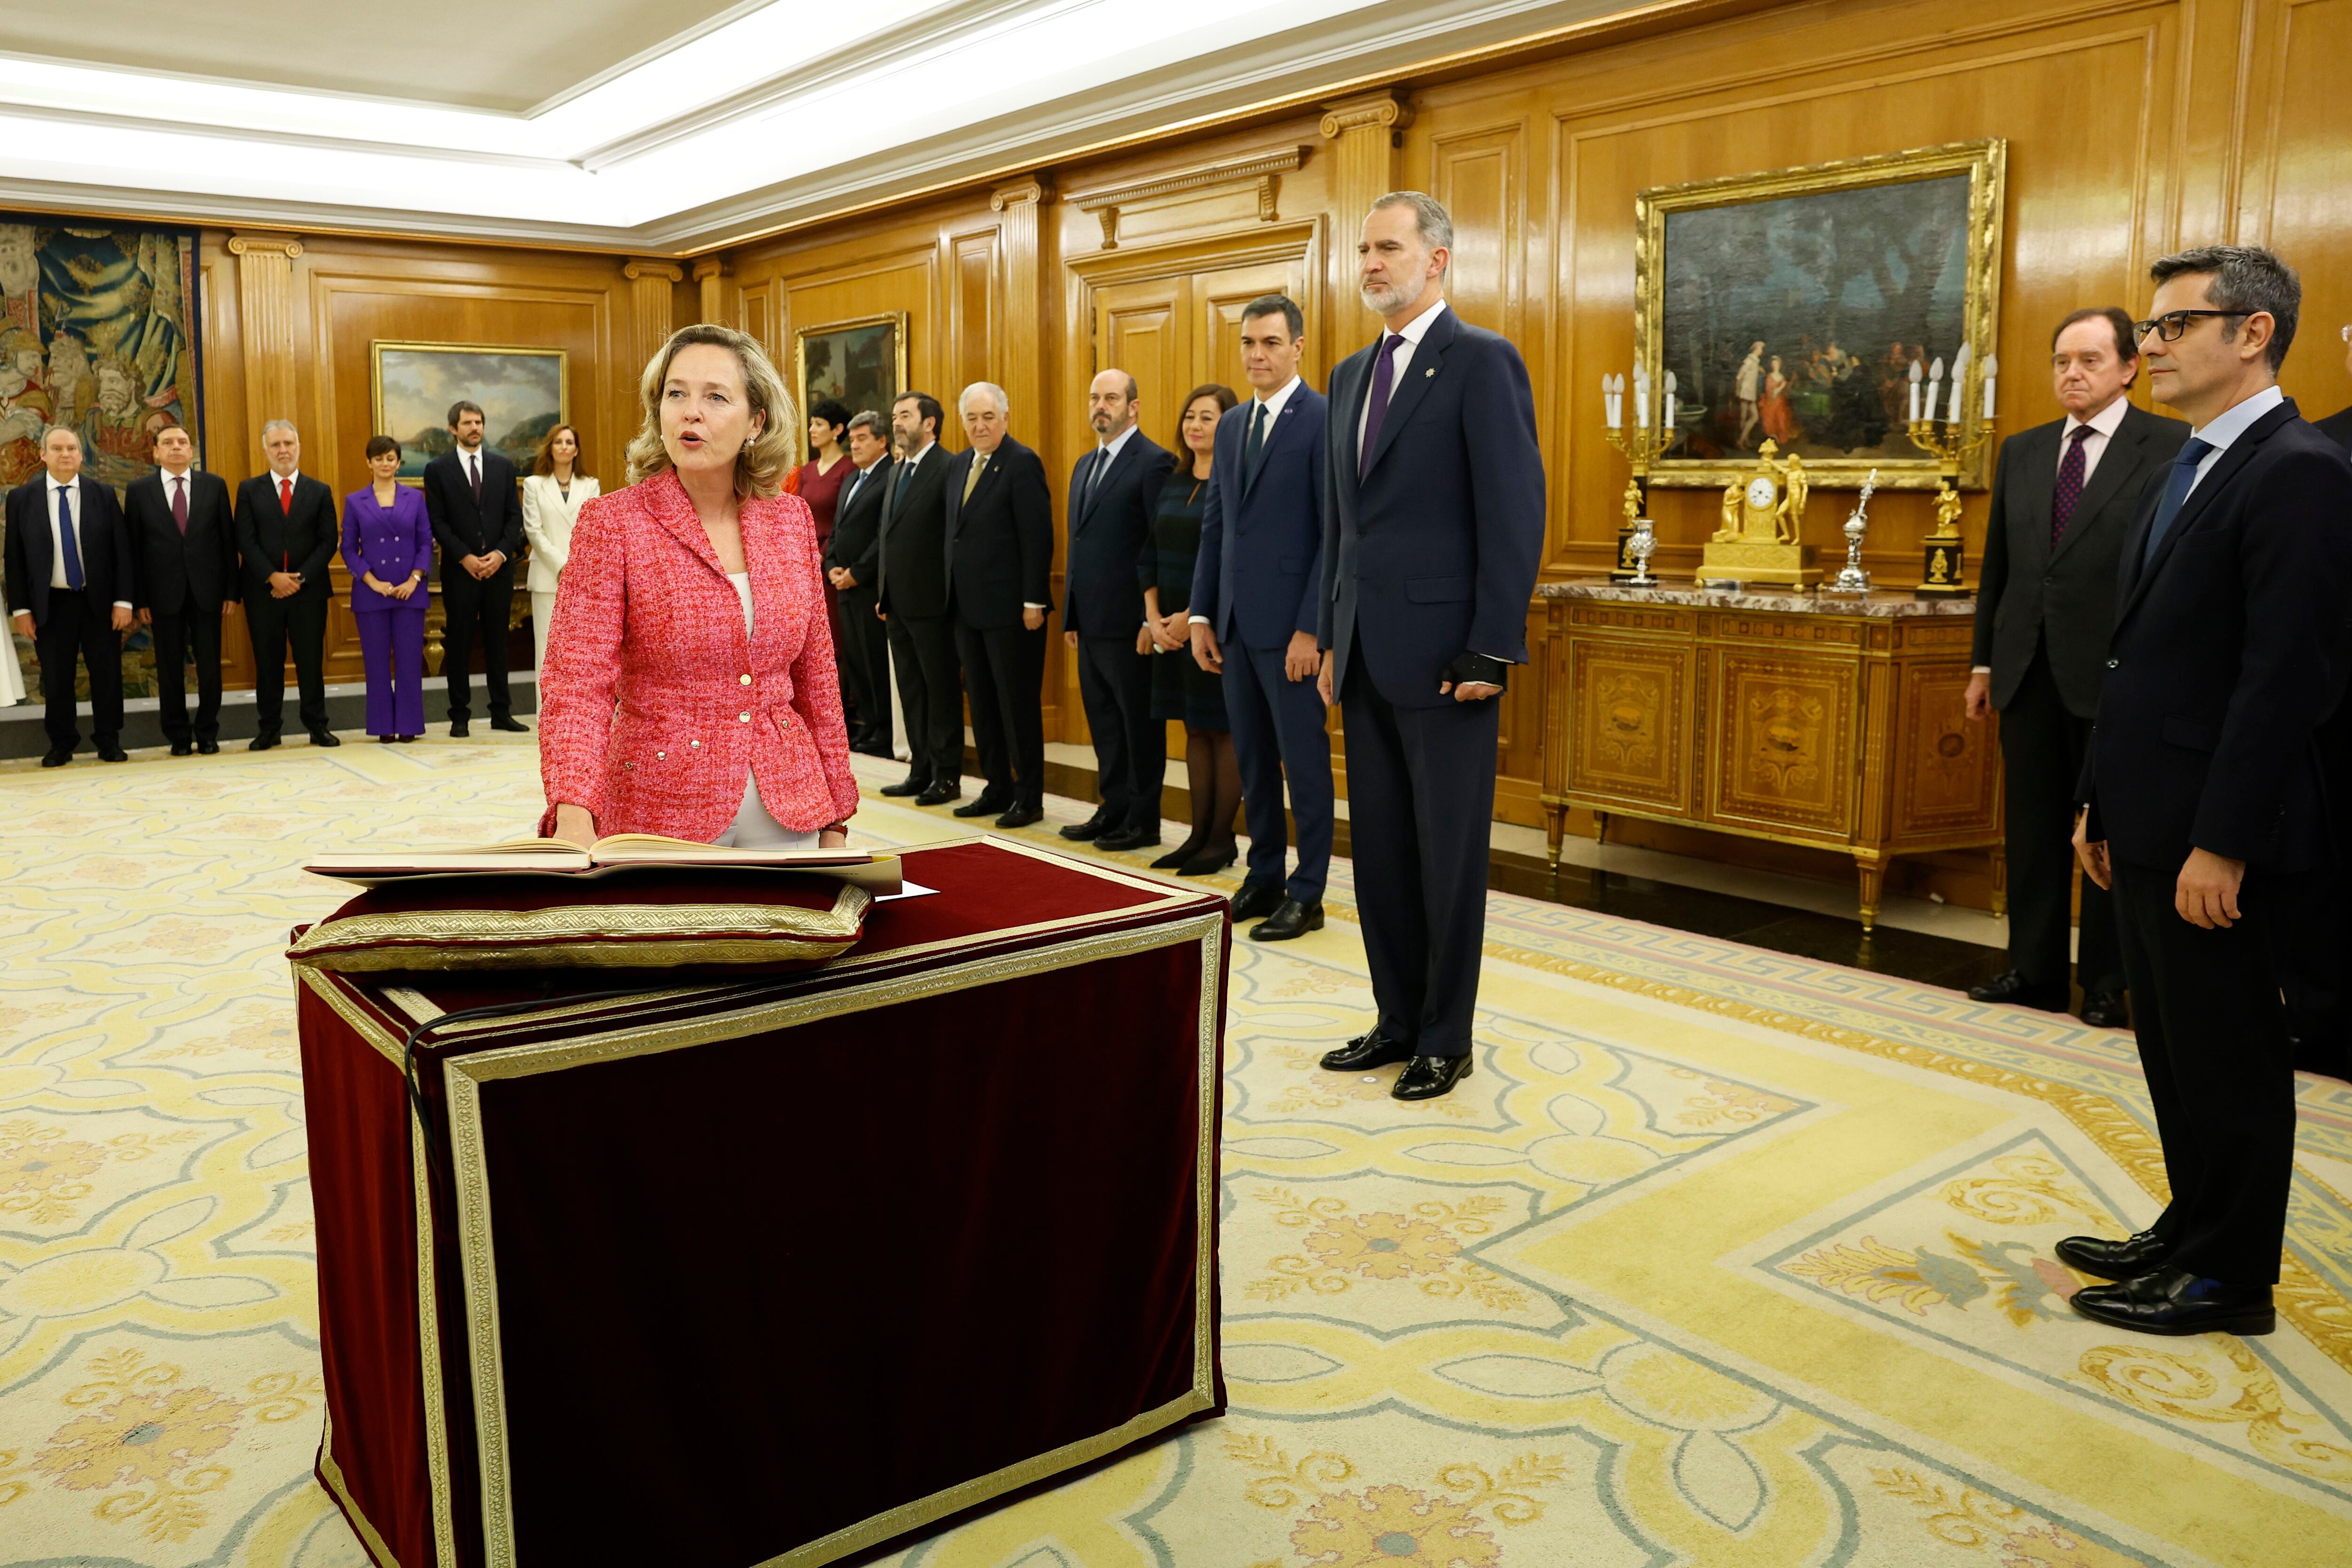 Nadia Calviño, vicepresidenta primera y ministra de Asuntos Económicos, en el momento que promete su cargo ante el Rey.